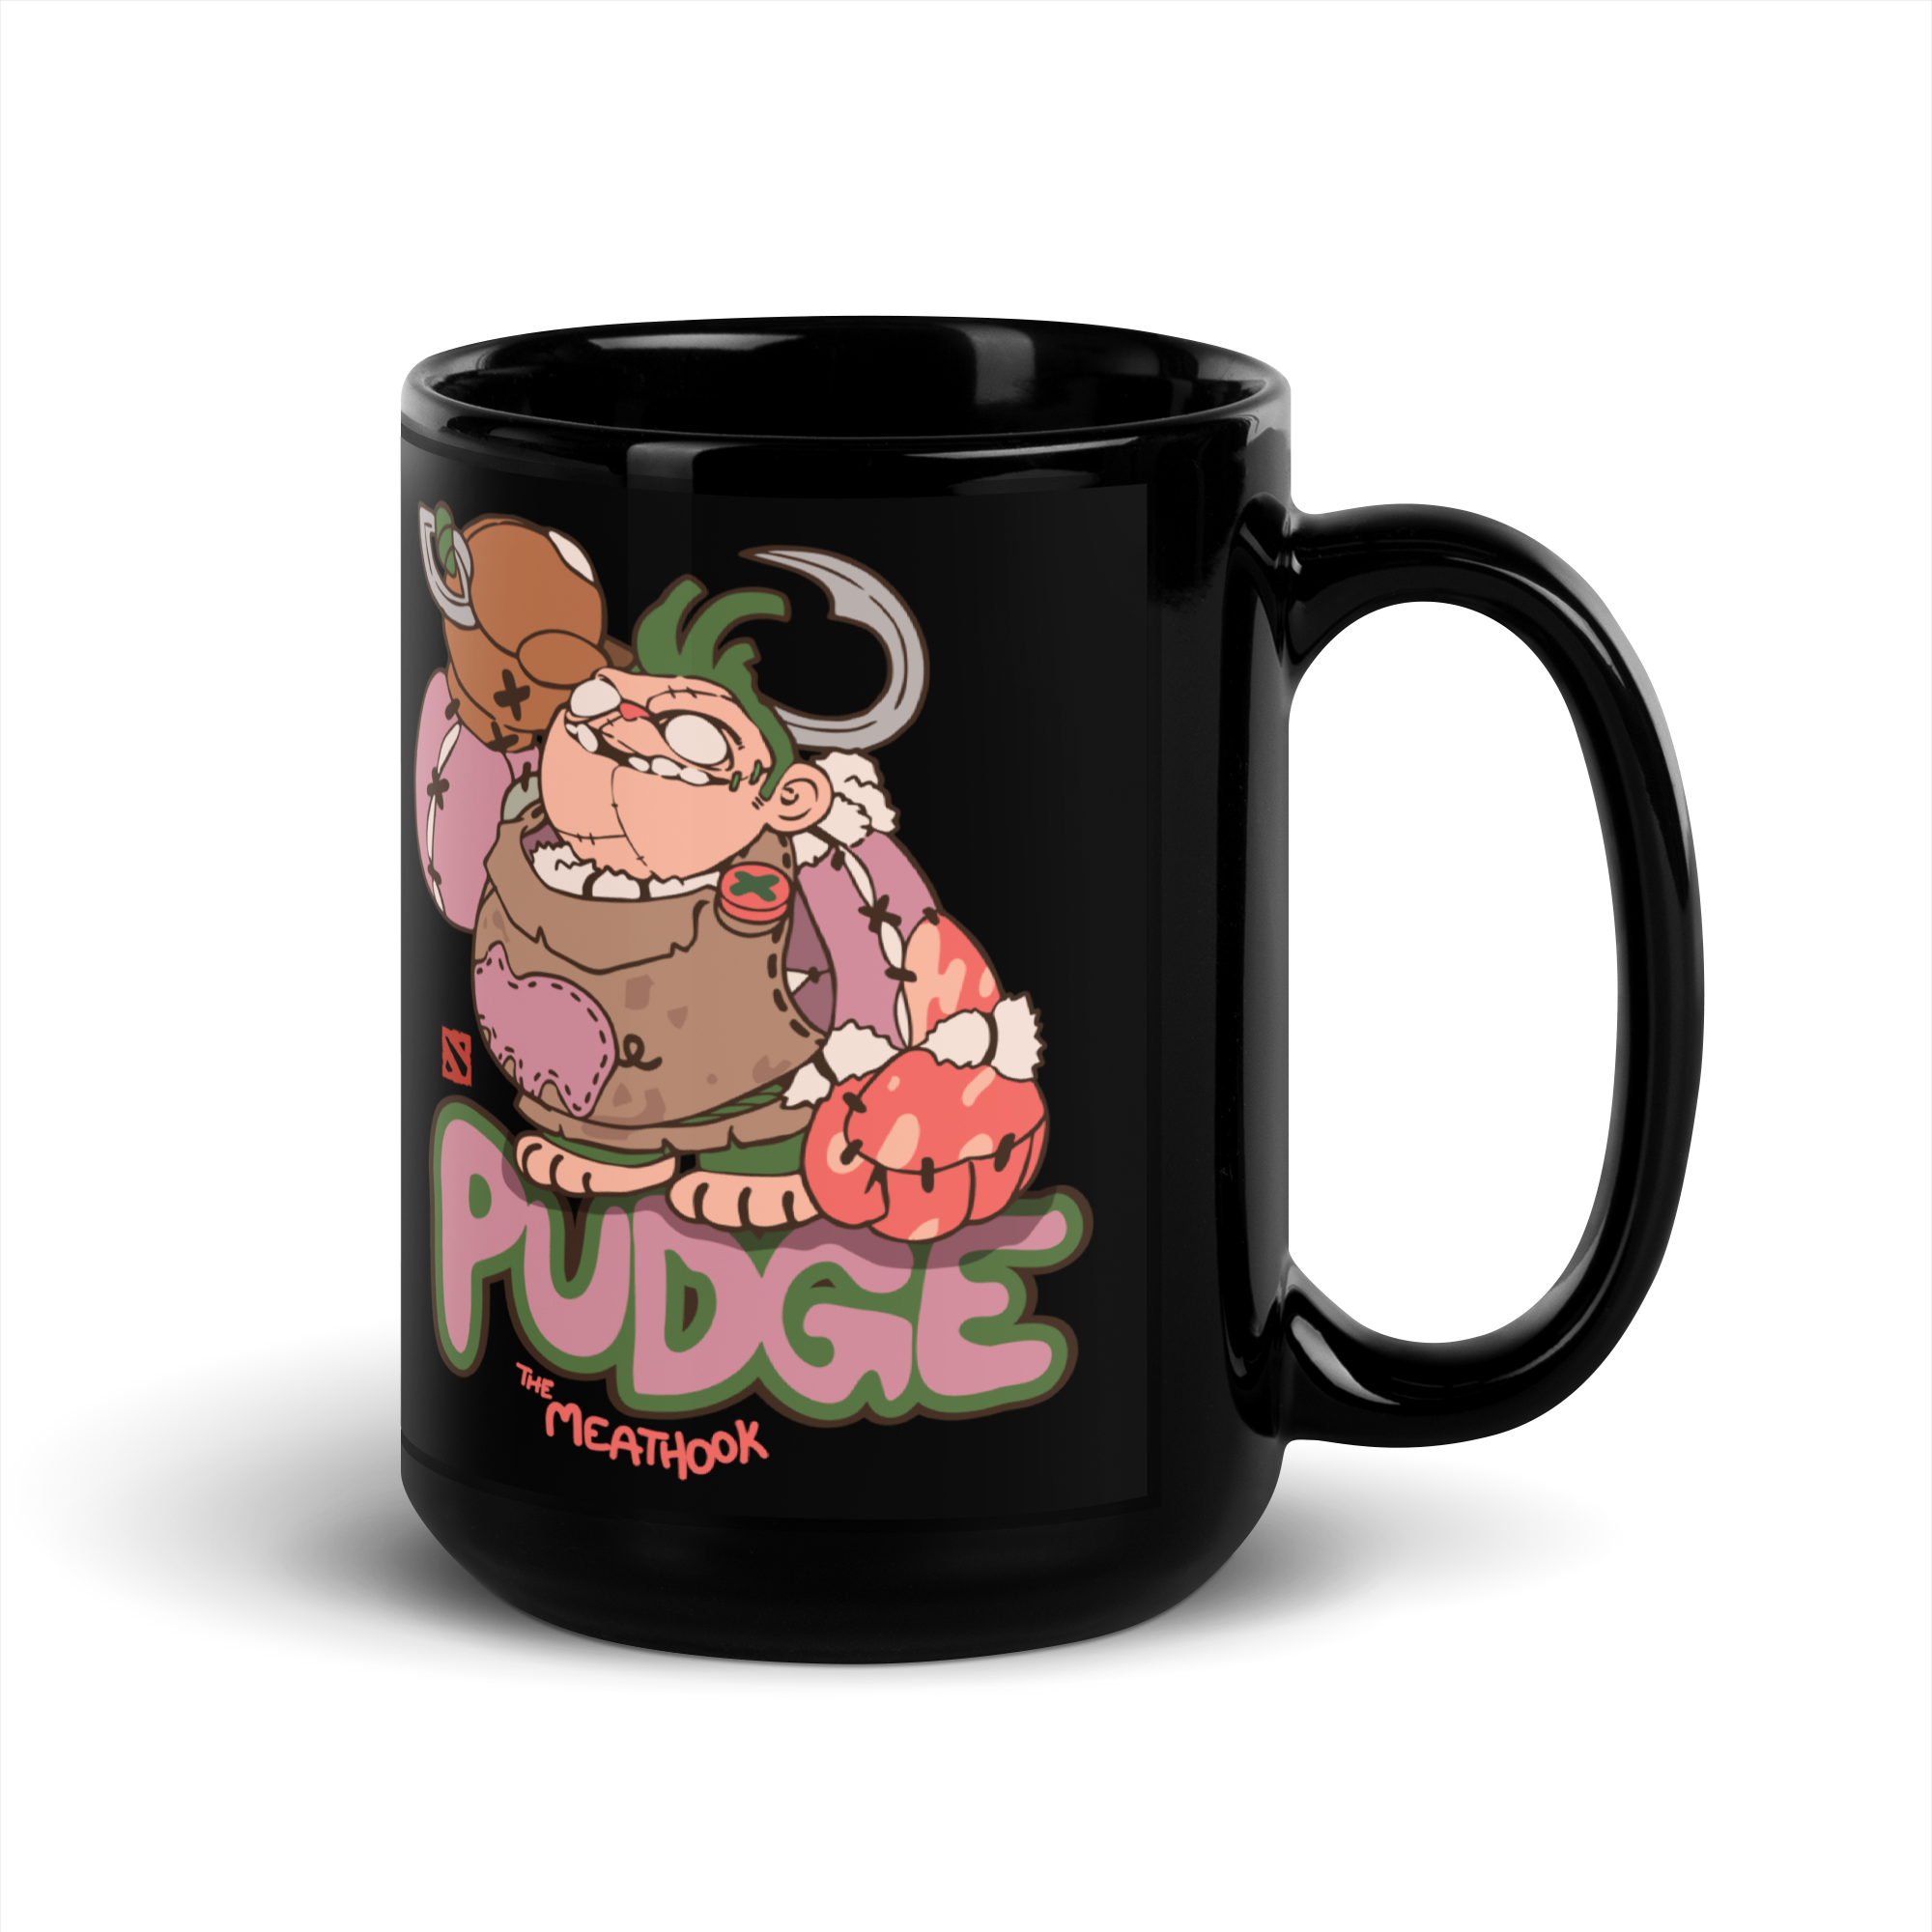 Pudge Mug